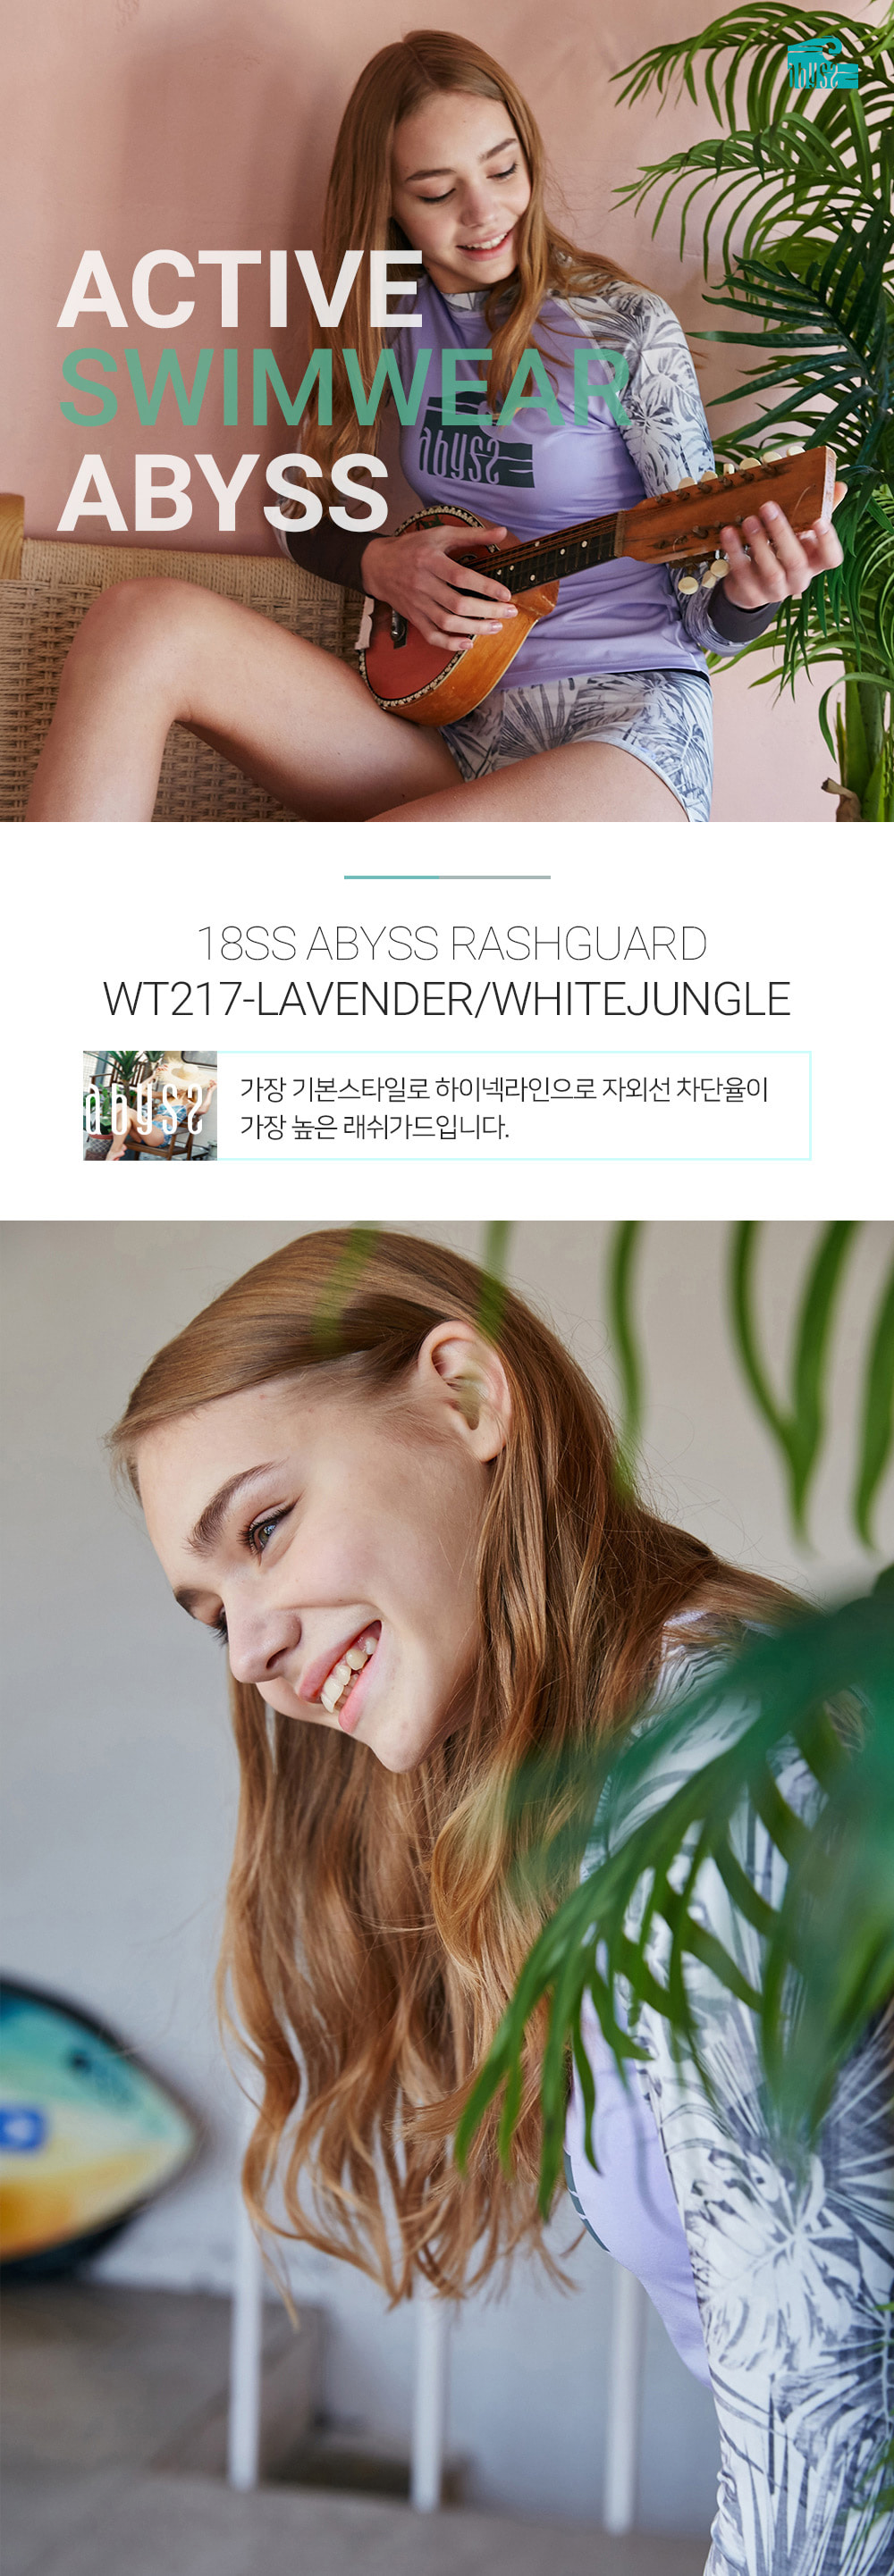 아비스 우먼 래쉬가드 WT217 라벤더/화이트정글